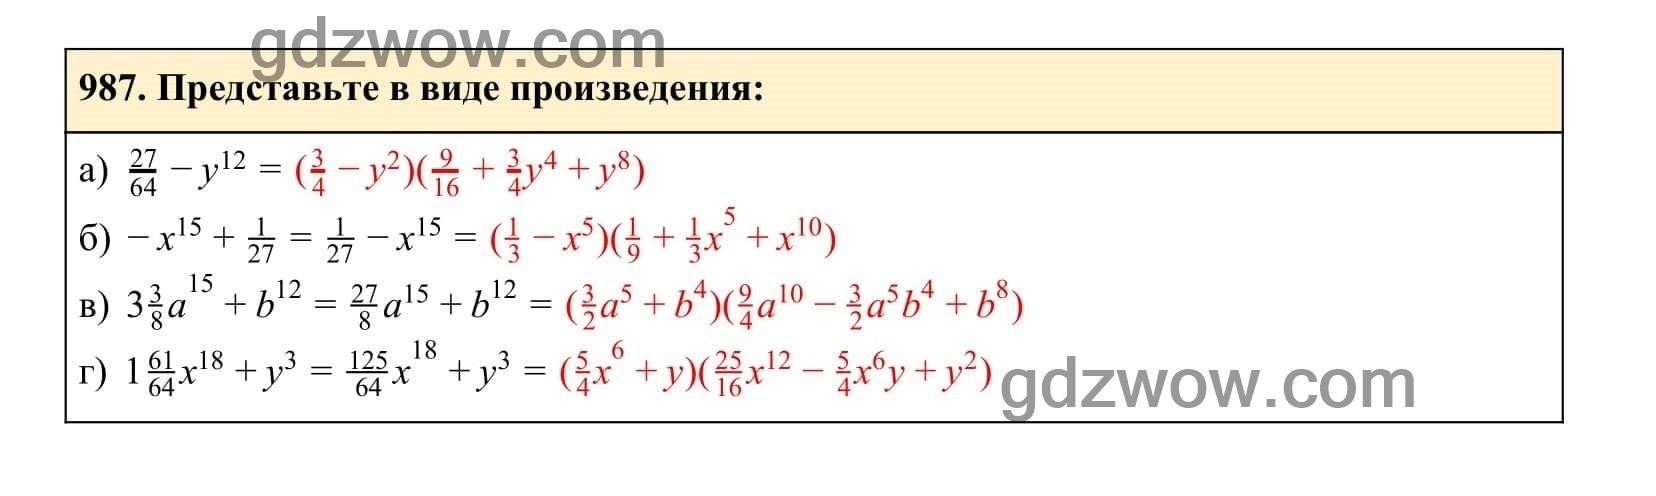 Упражнение 987 - ГДЗ по Алгебре 7 класс Учебник Макарычев (решебник) - GDZwow